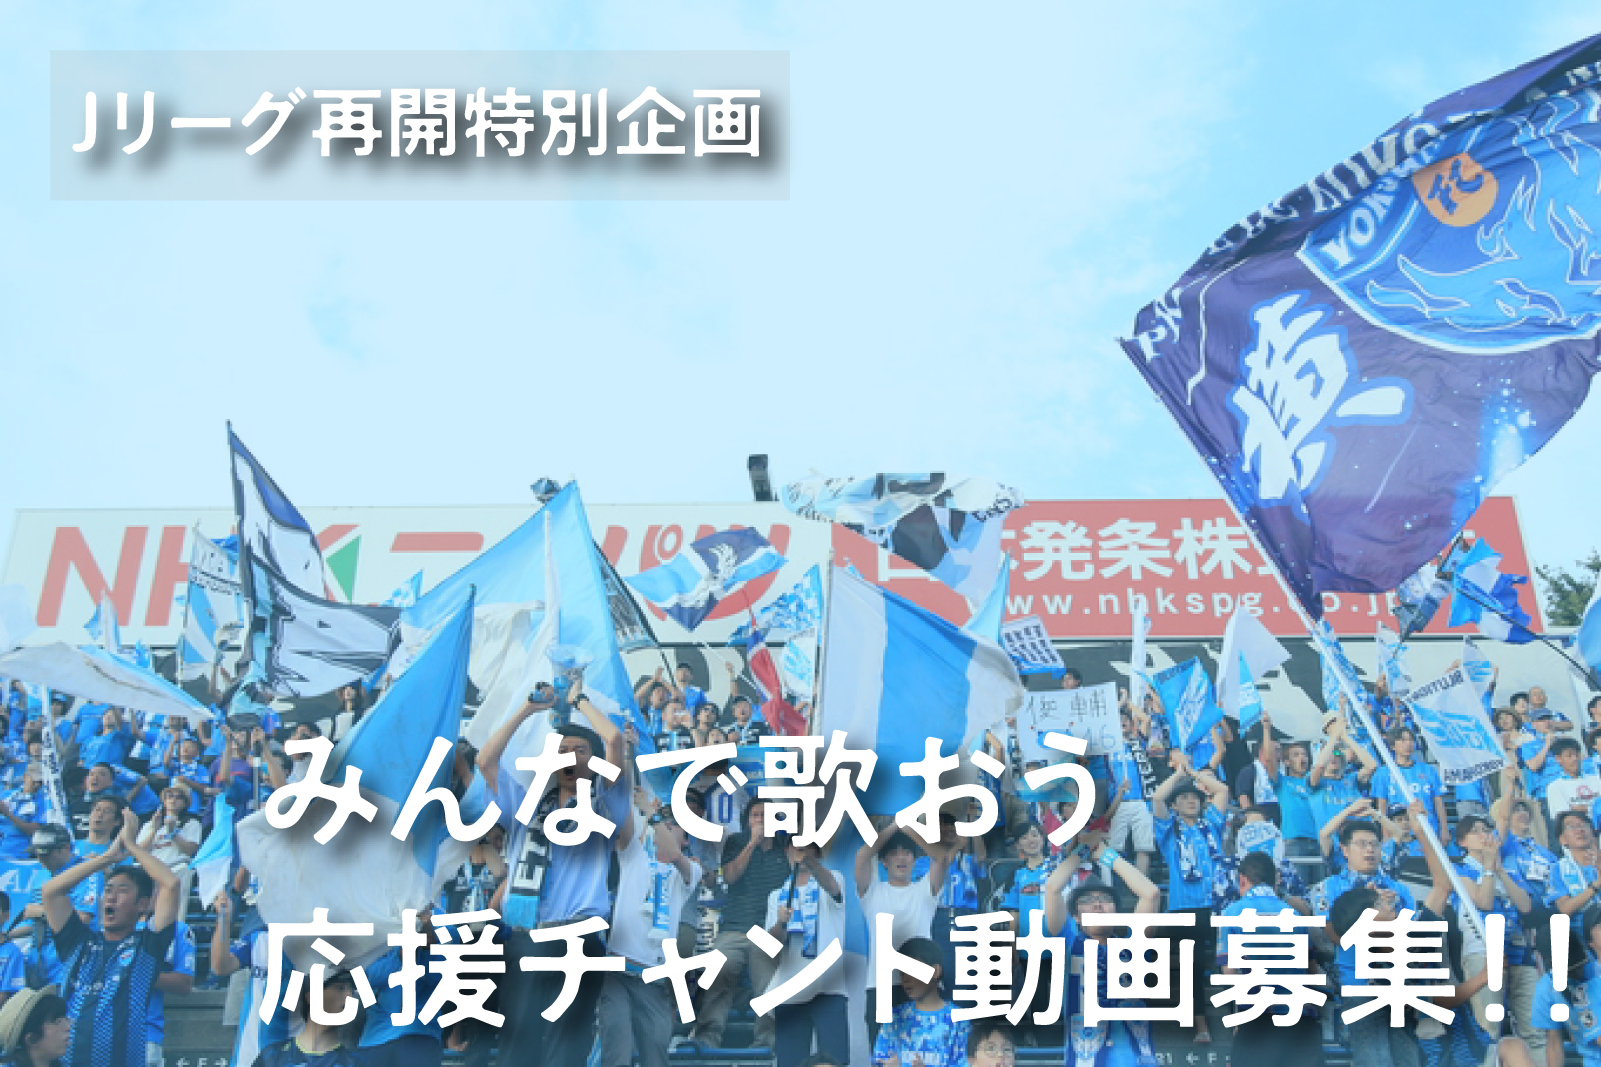 ｊリーグ再開特別企画 みんなで歌ってスタジアムに声援を届けよう 横浜fcのプレスリリース